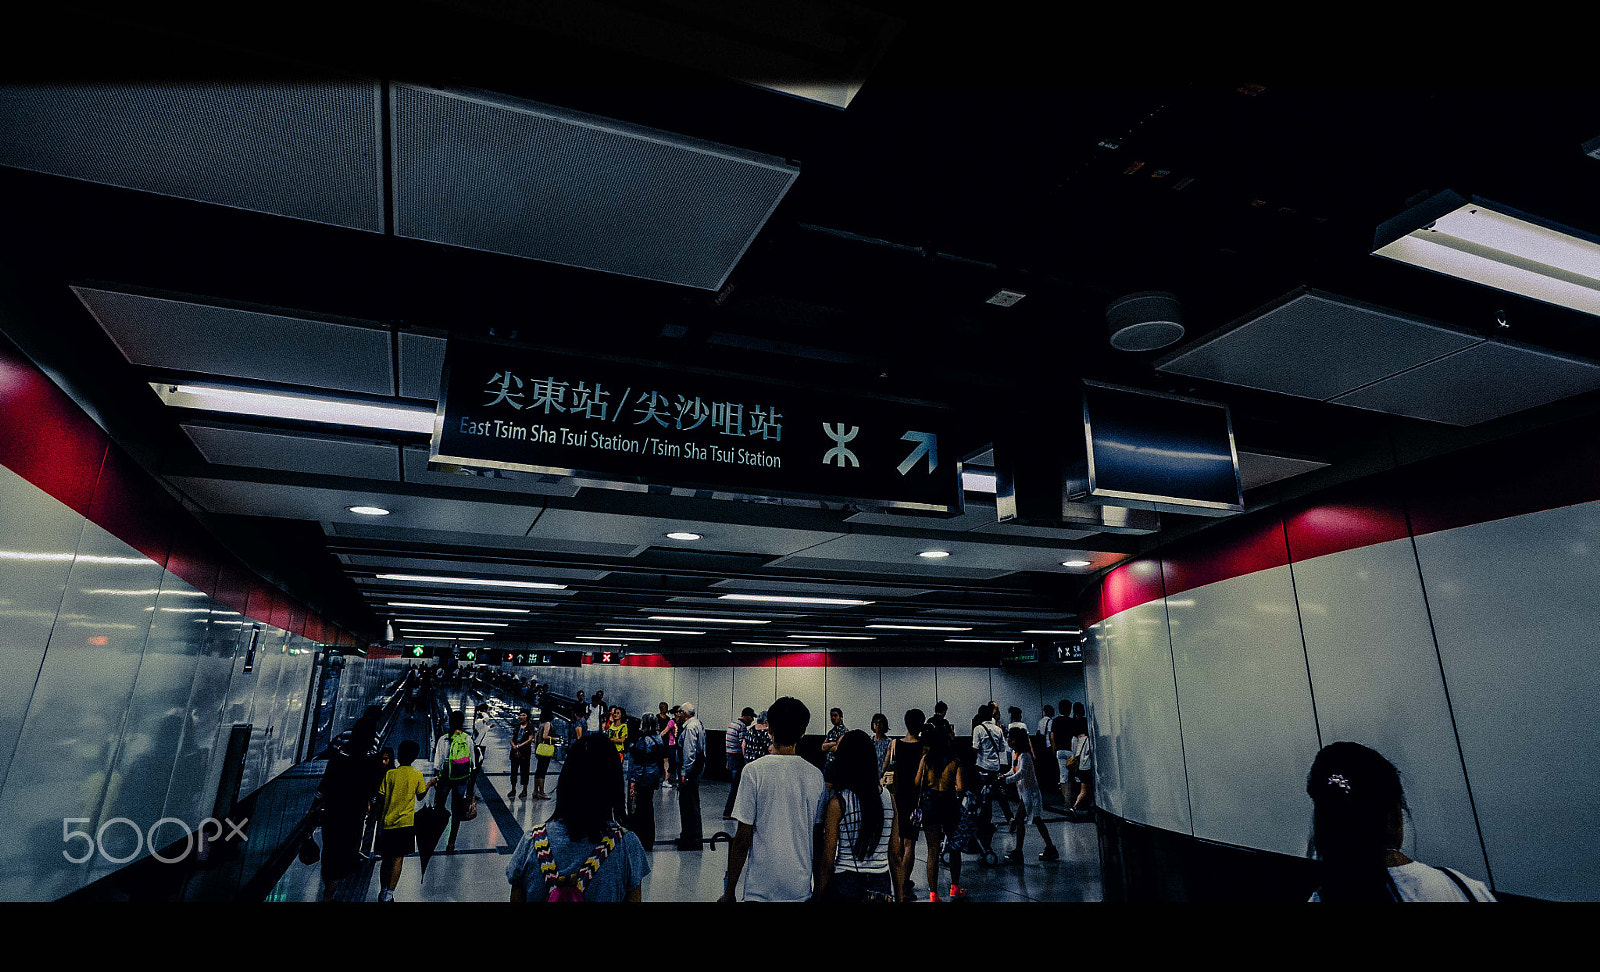 Sony a7R sample photo. Hong kong subway station (mtr) photography